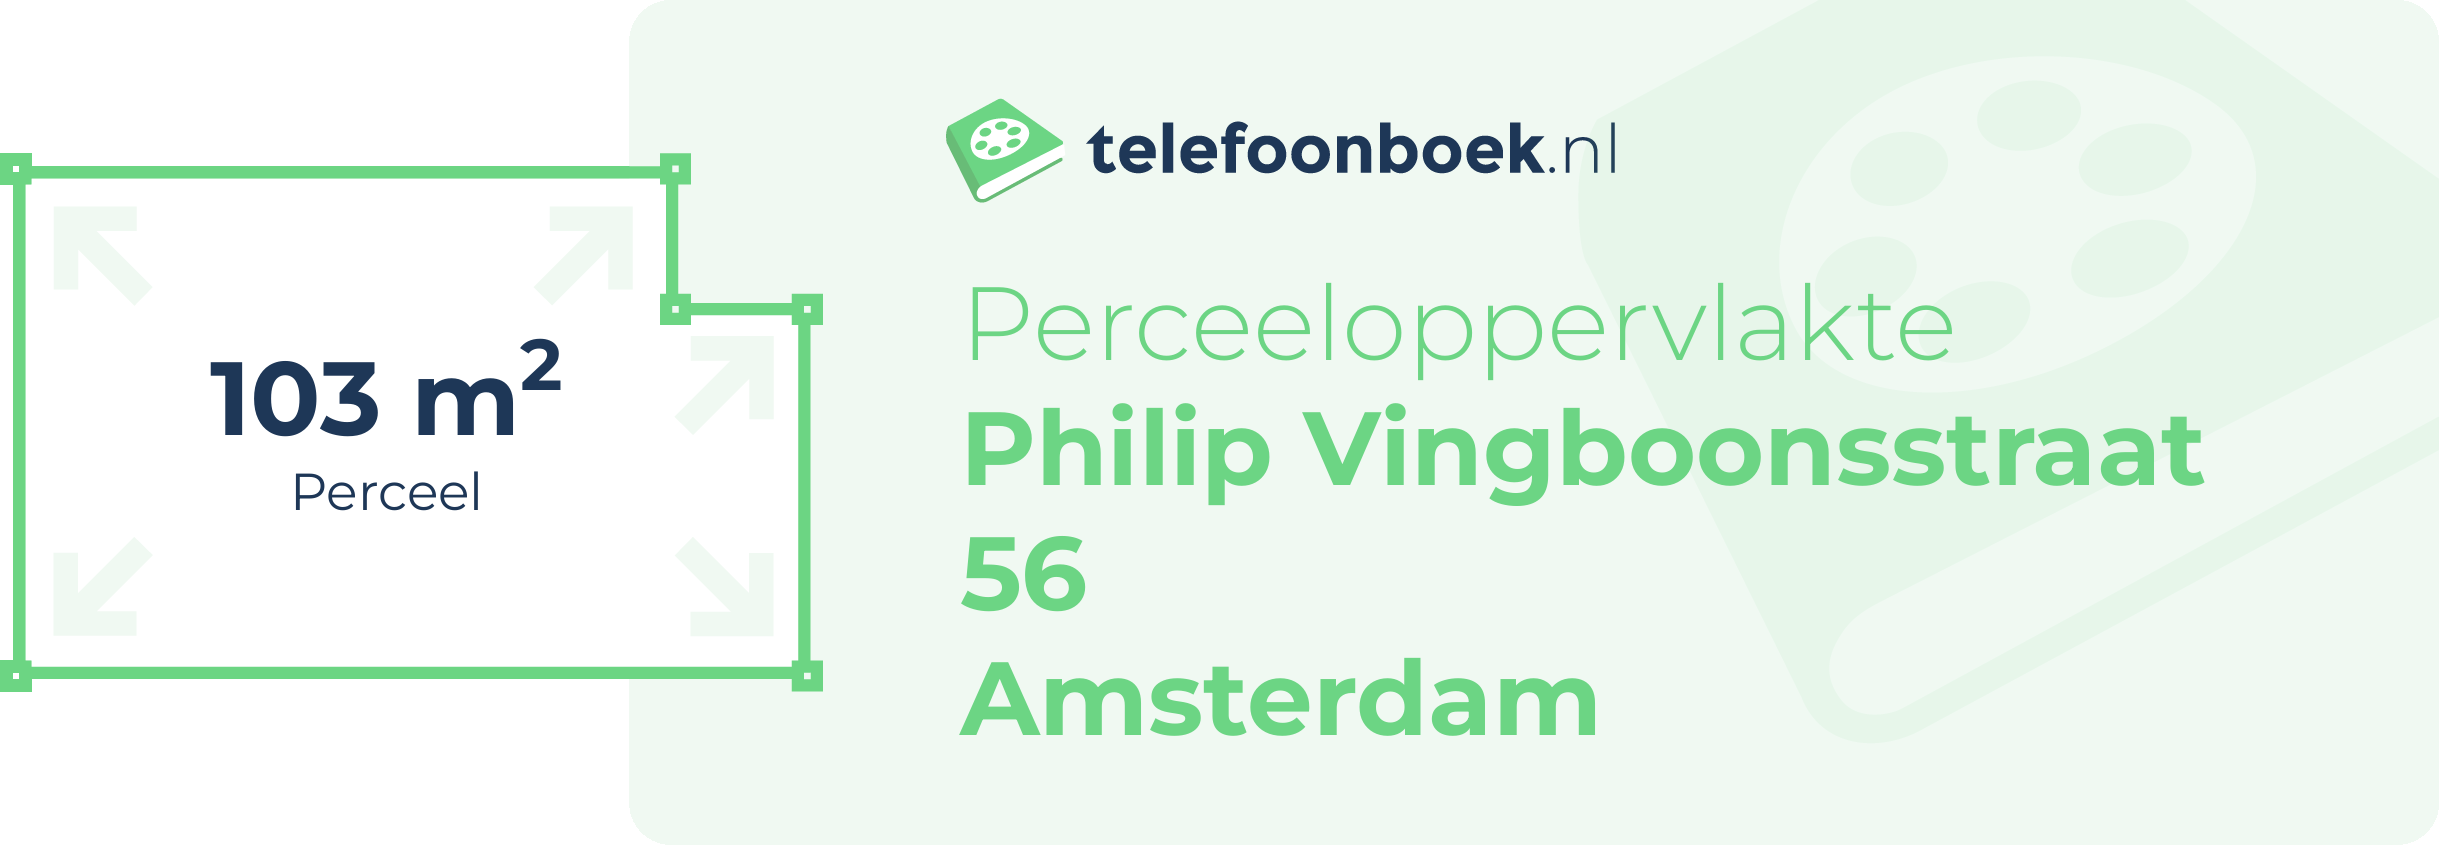 Perceeloppervlakte Philip Vingboonsstraat 56 Amsterdam